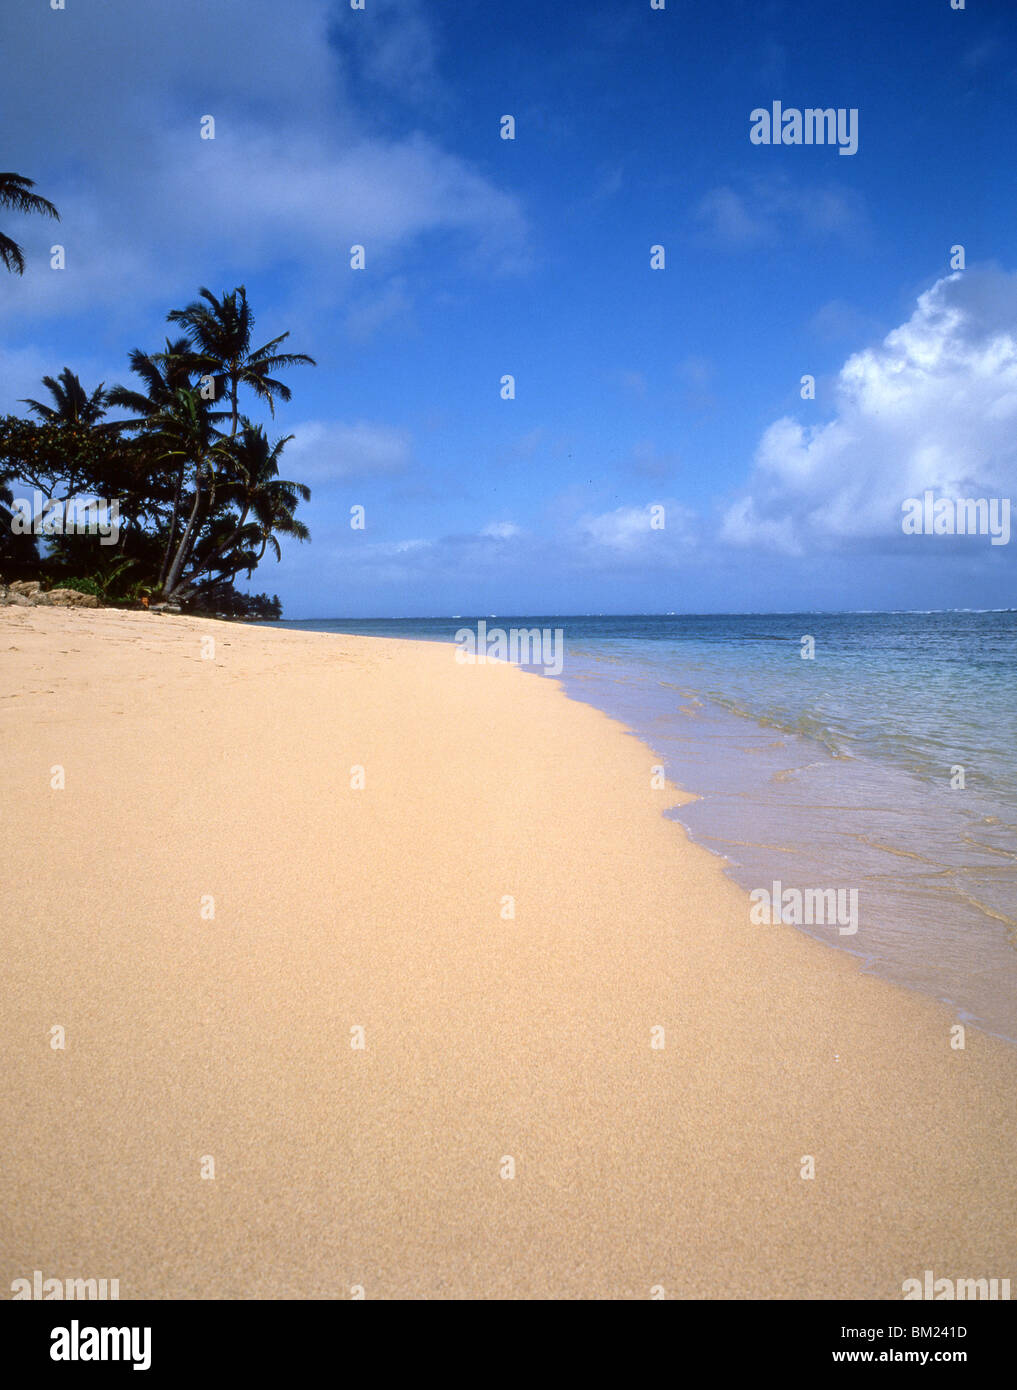 Spiaggia deserta, North Shore Oahu, Hawaii, Stati Uniti d'America Foto Stock